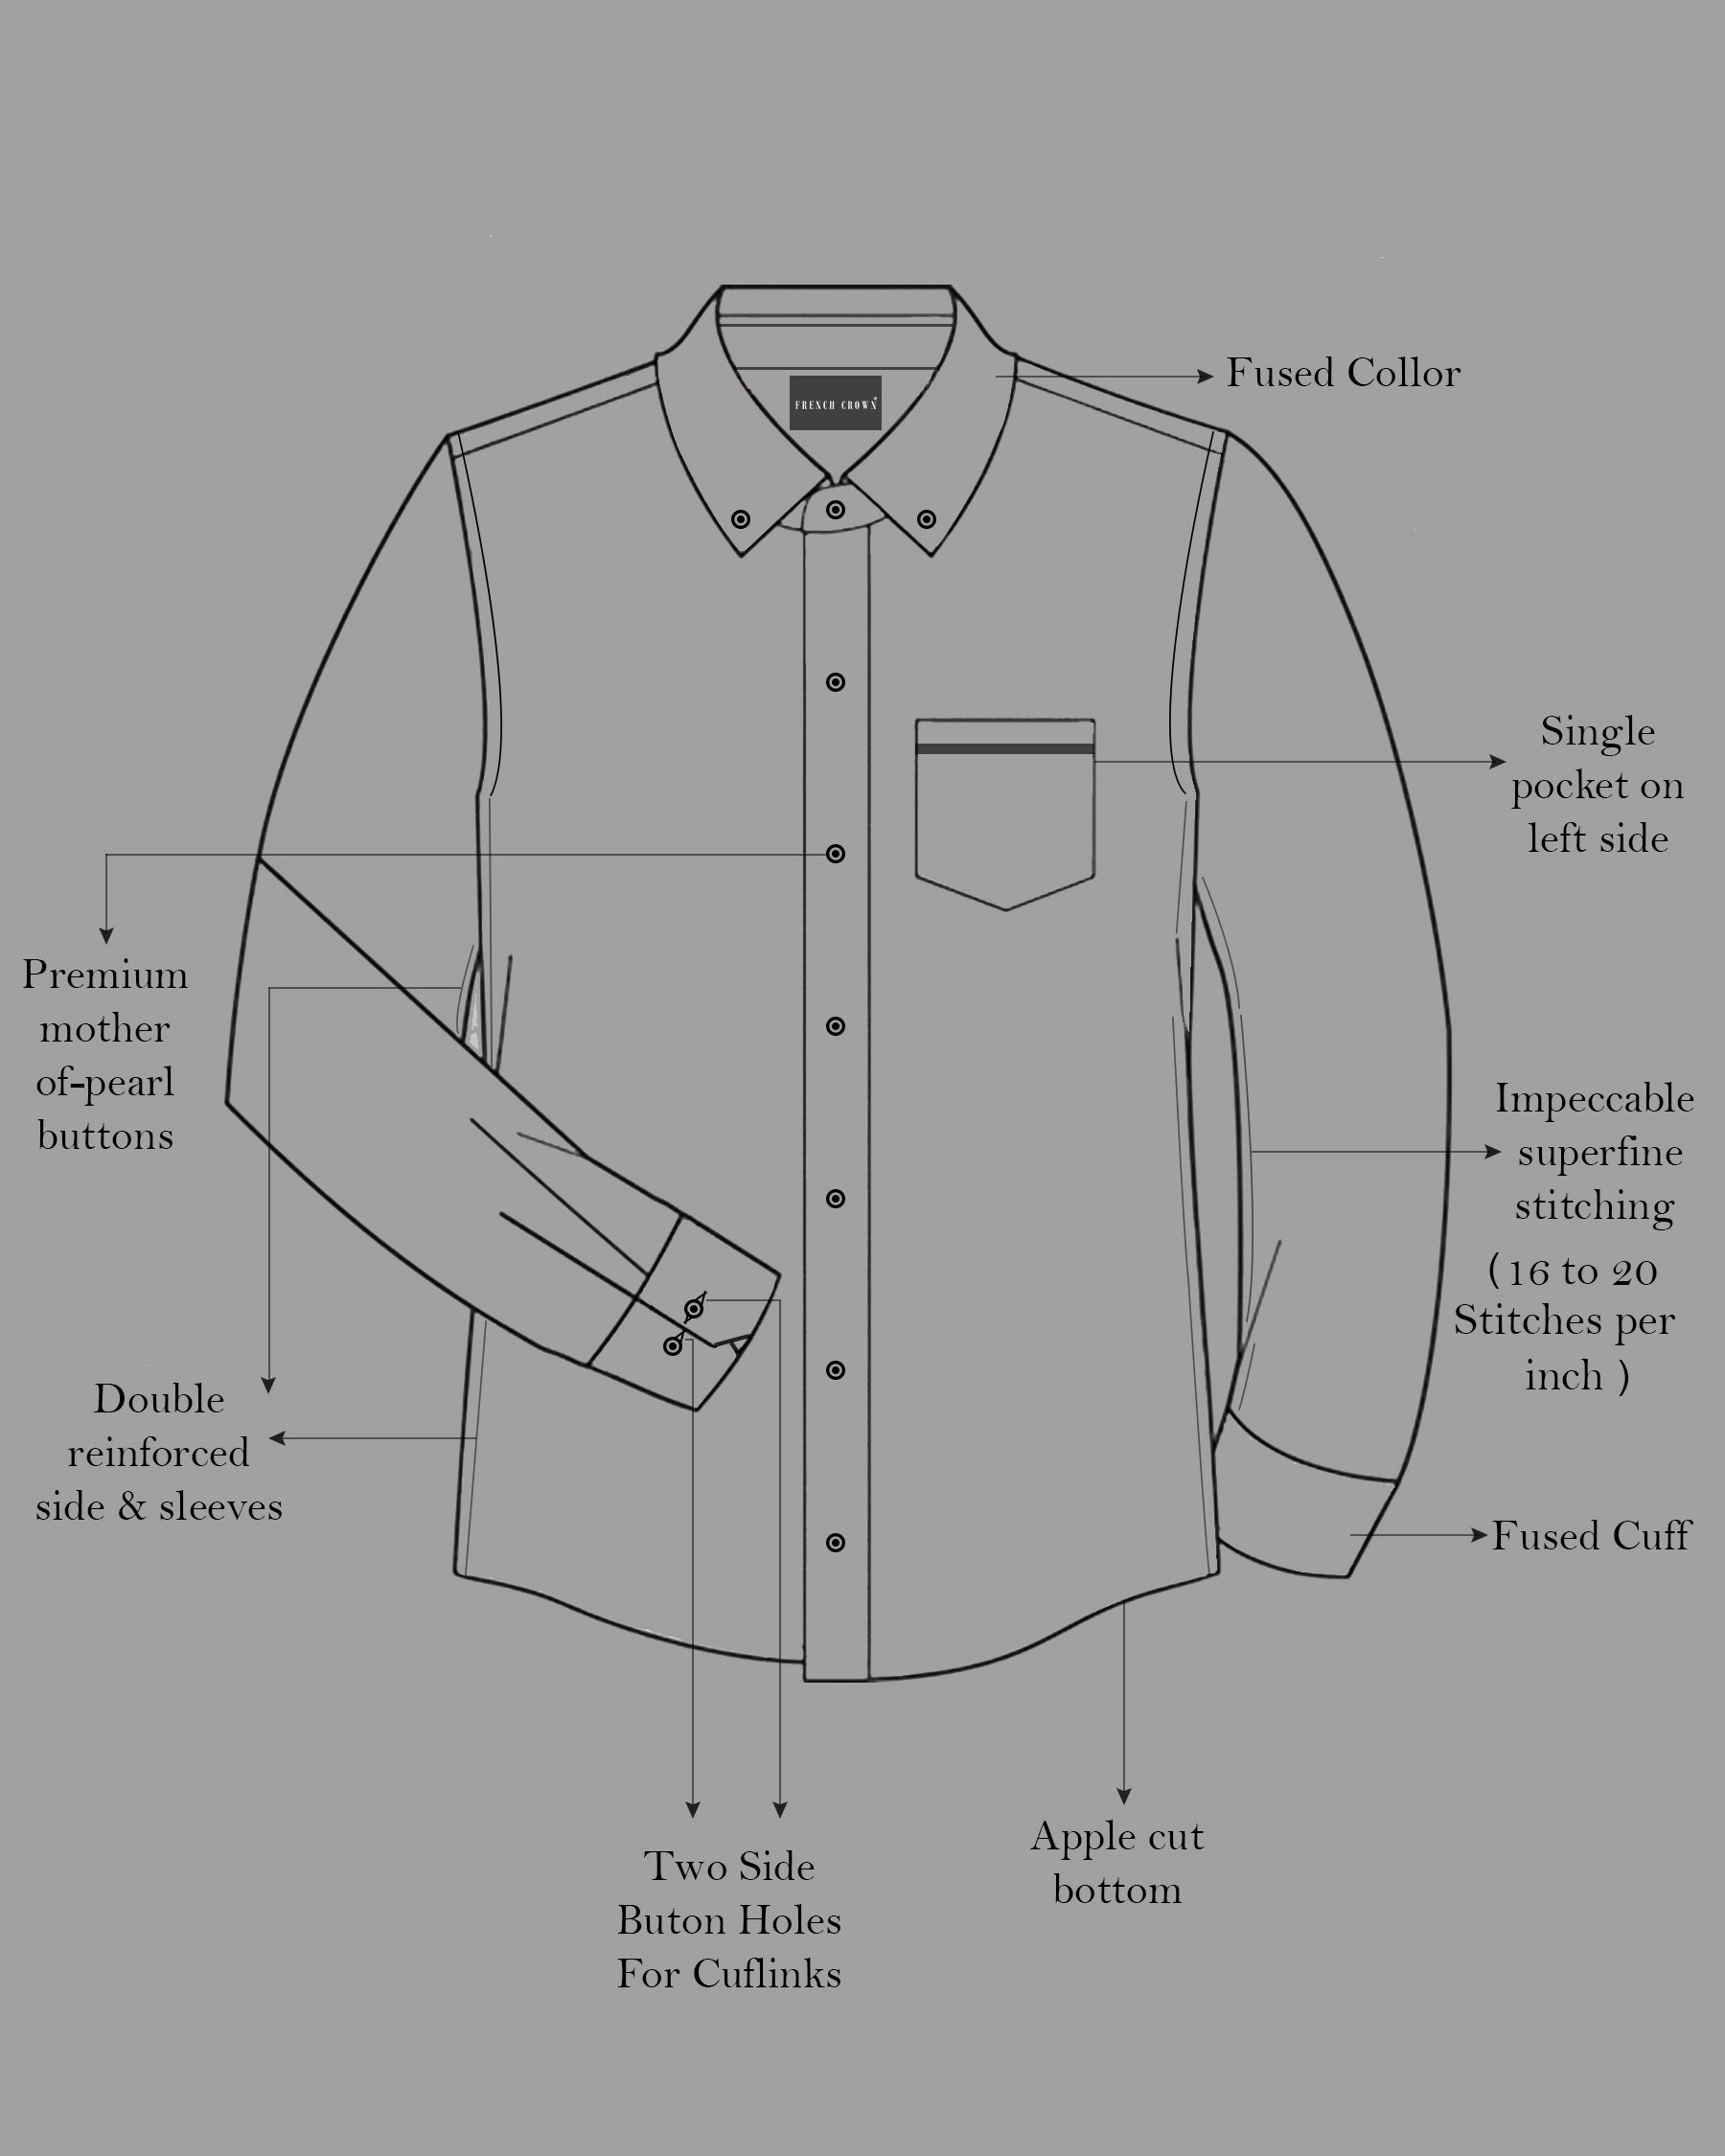 Nickel Gray and Tamarind Maroon Twill Checkered Premium Cotton Shirt